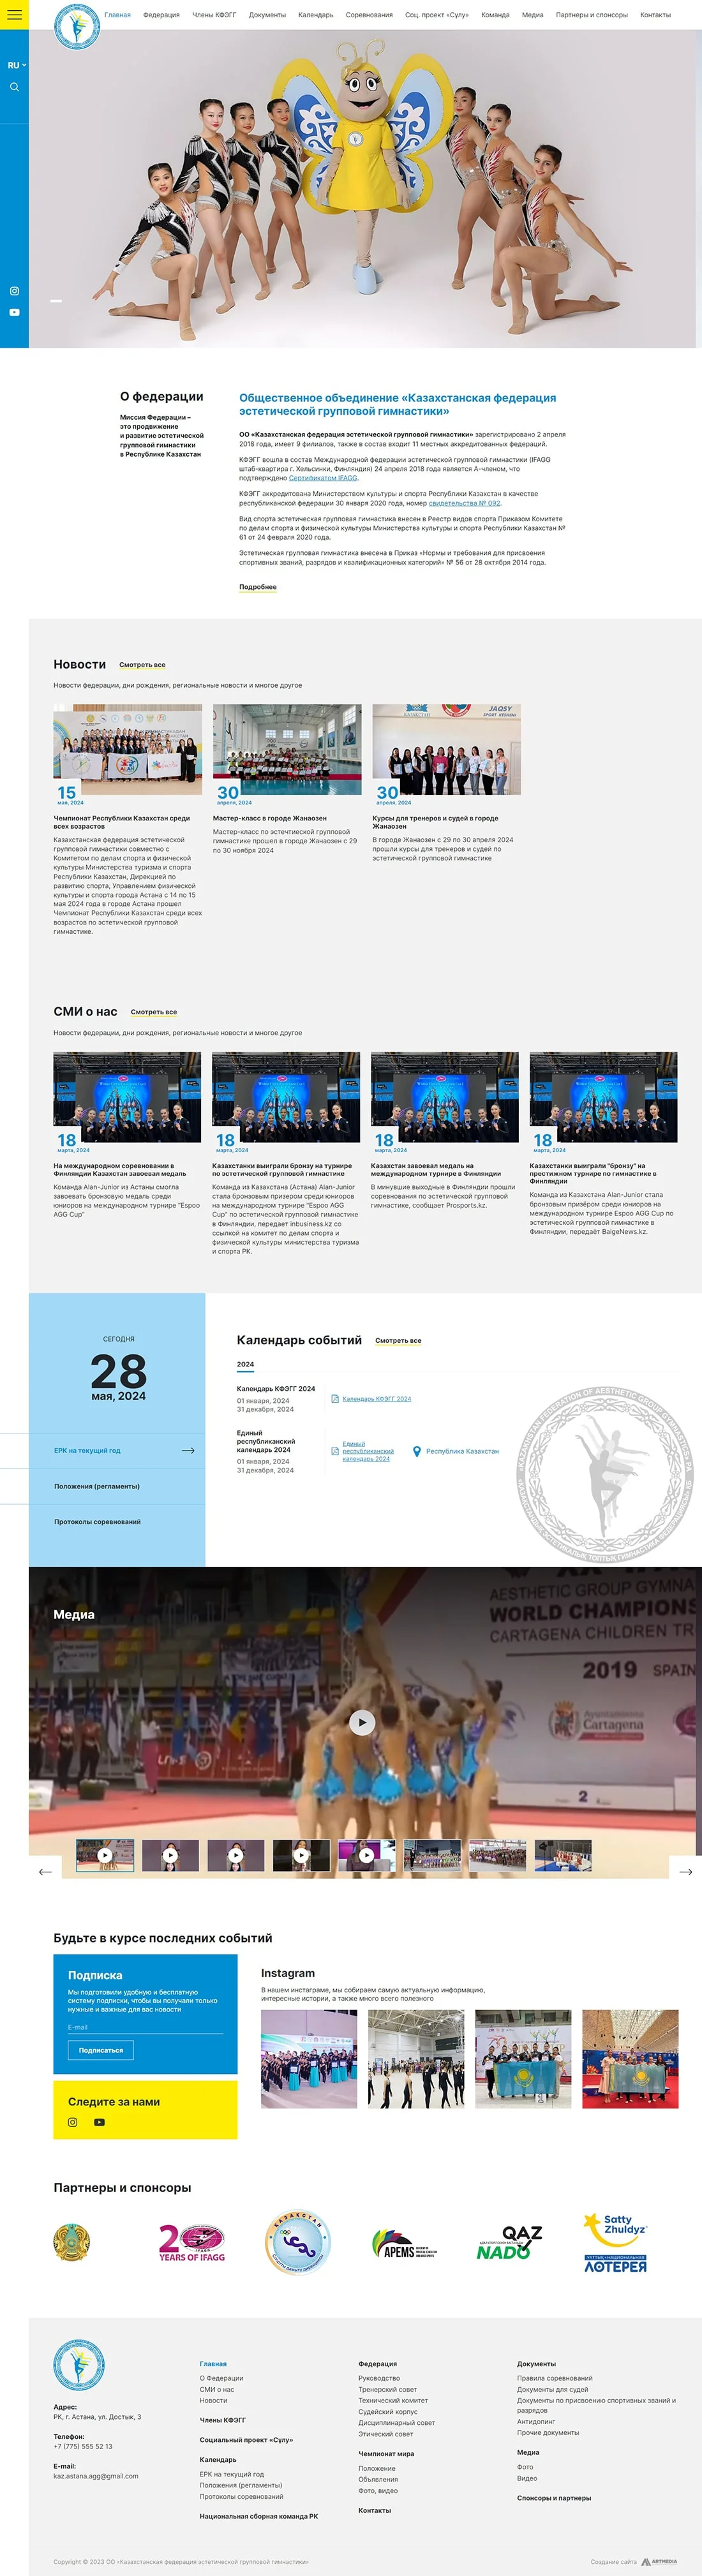 Разработка сайта для «Казахстанская федерация эстетической групповой гимнастики»